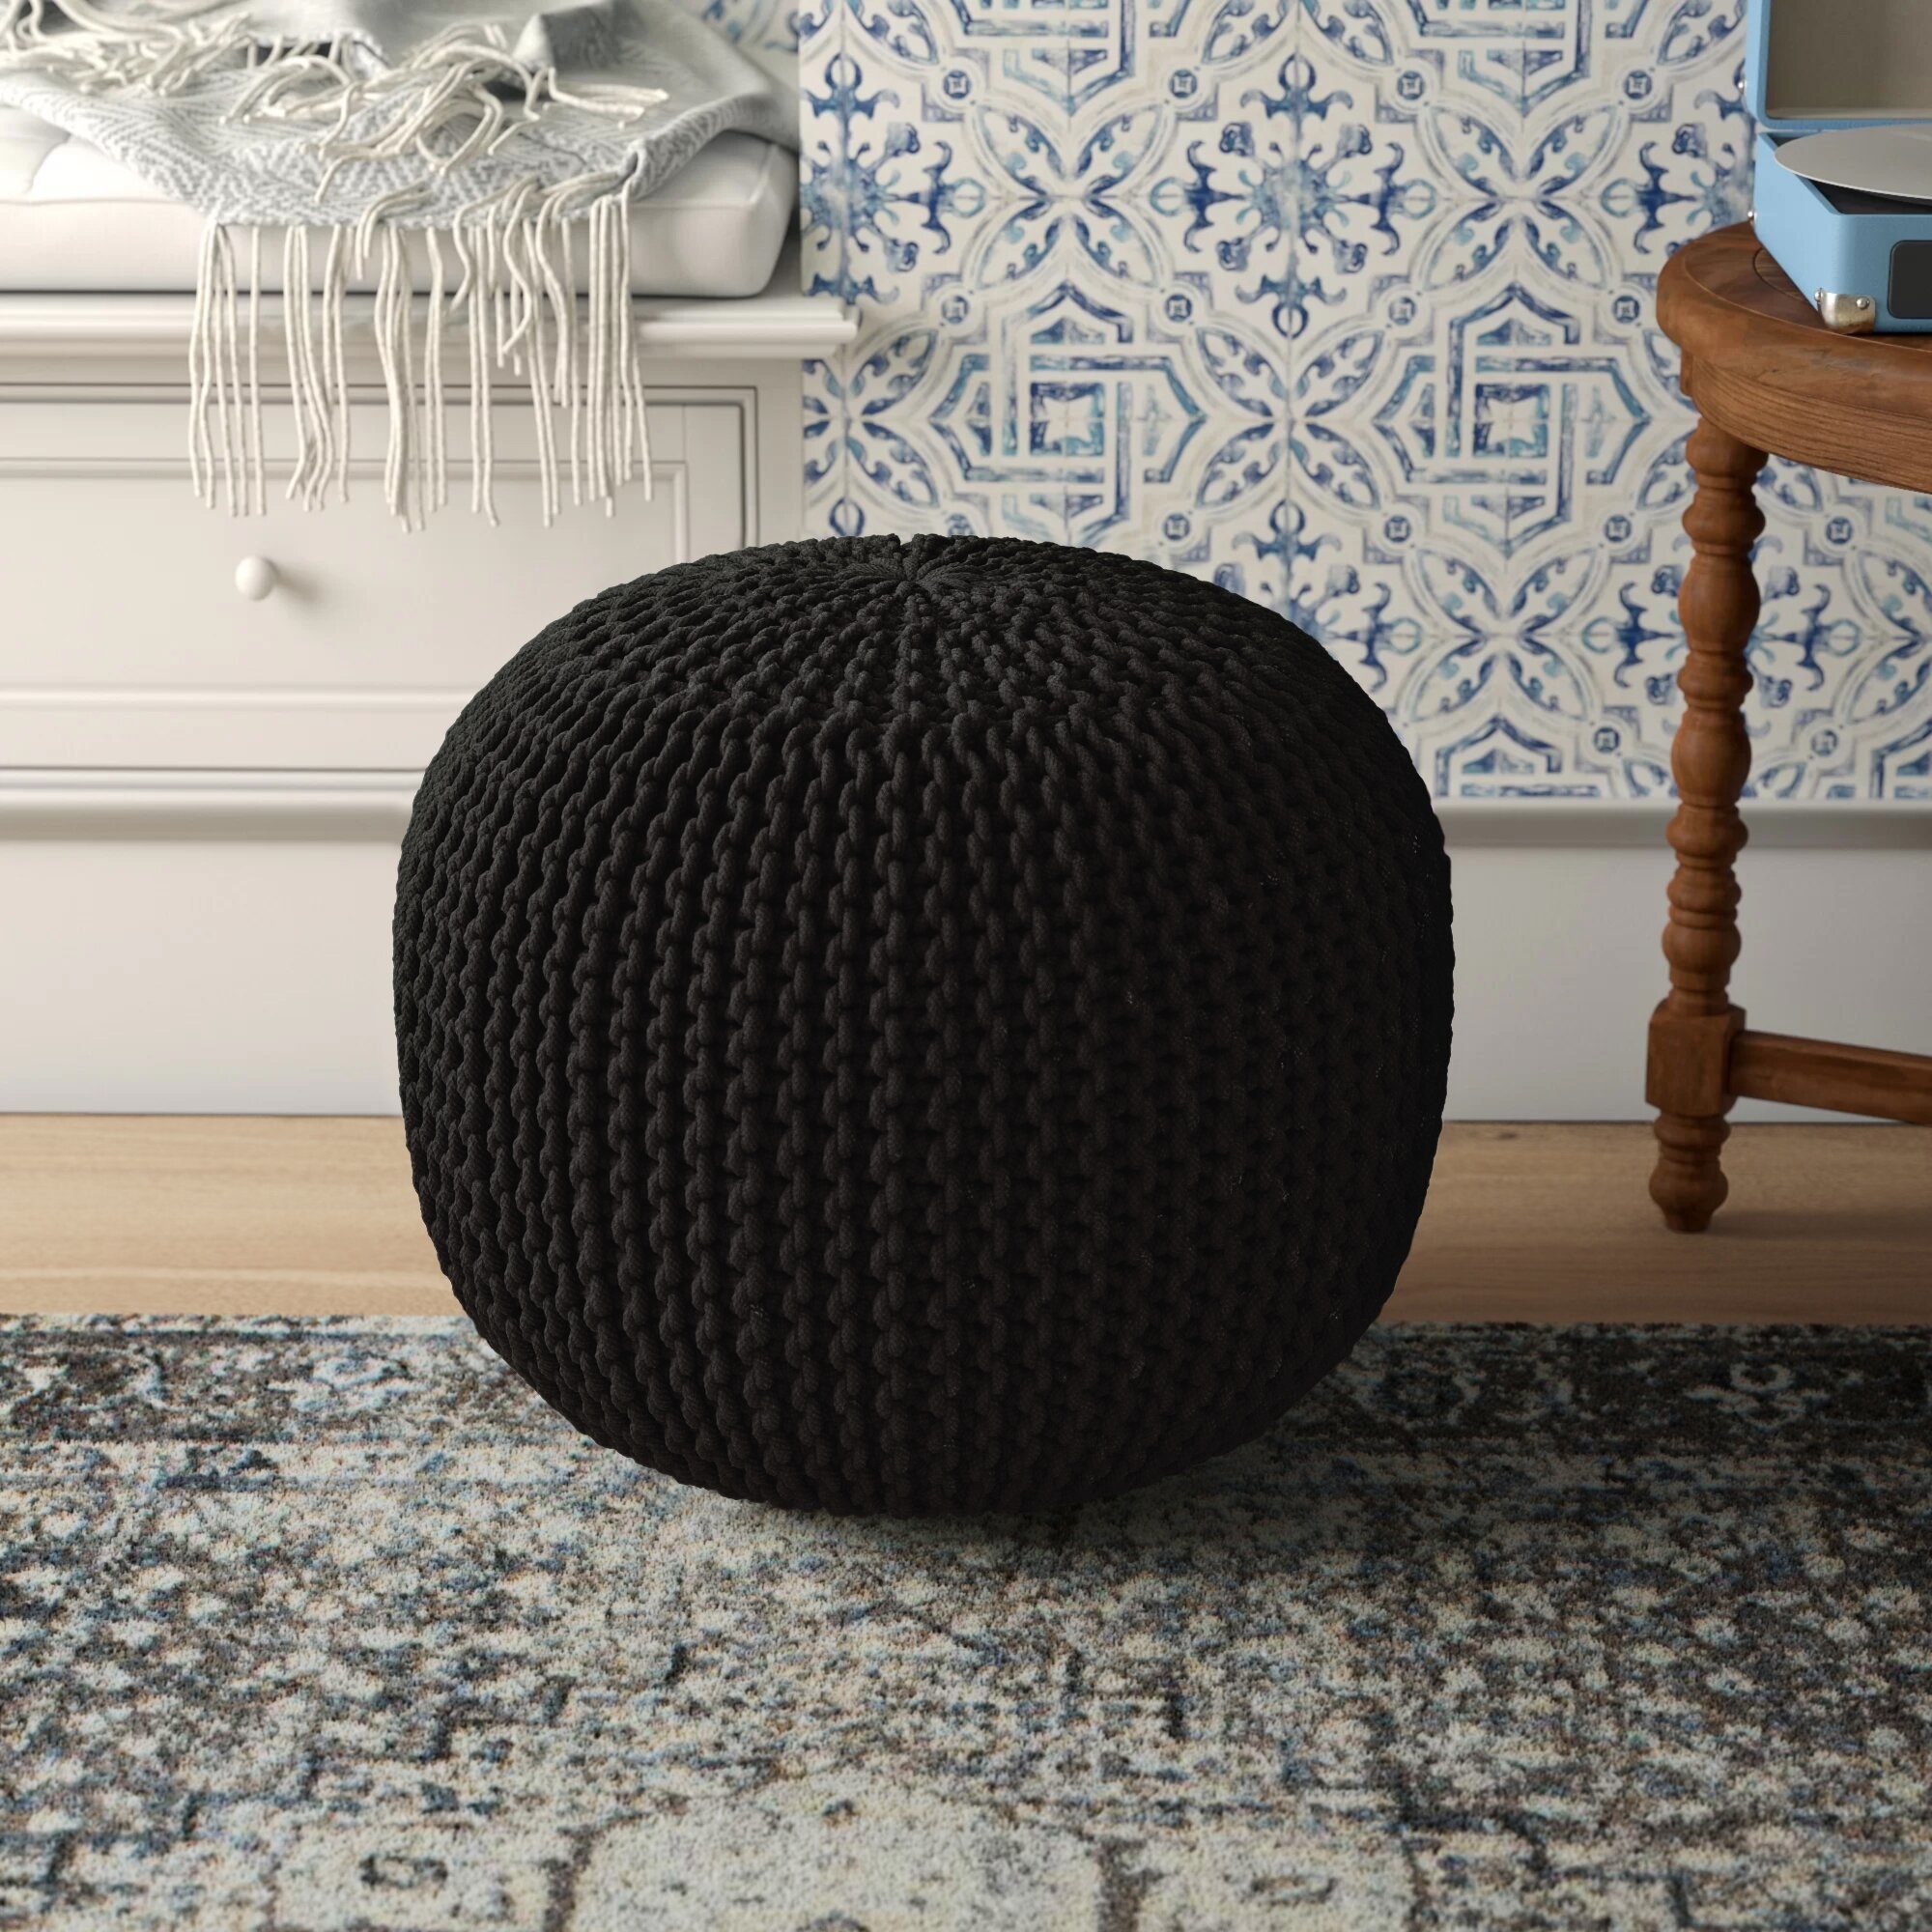 A black ottoman on a rug